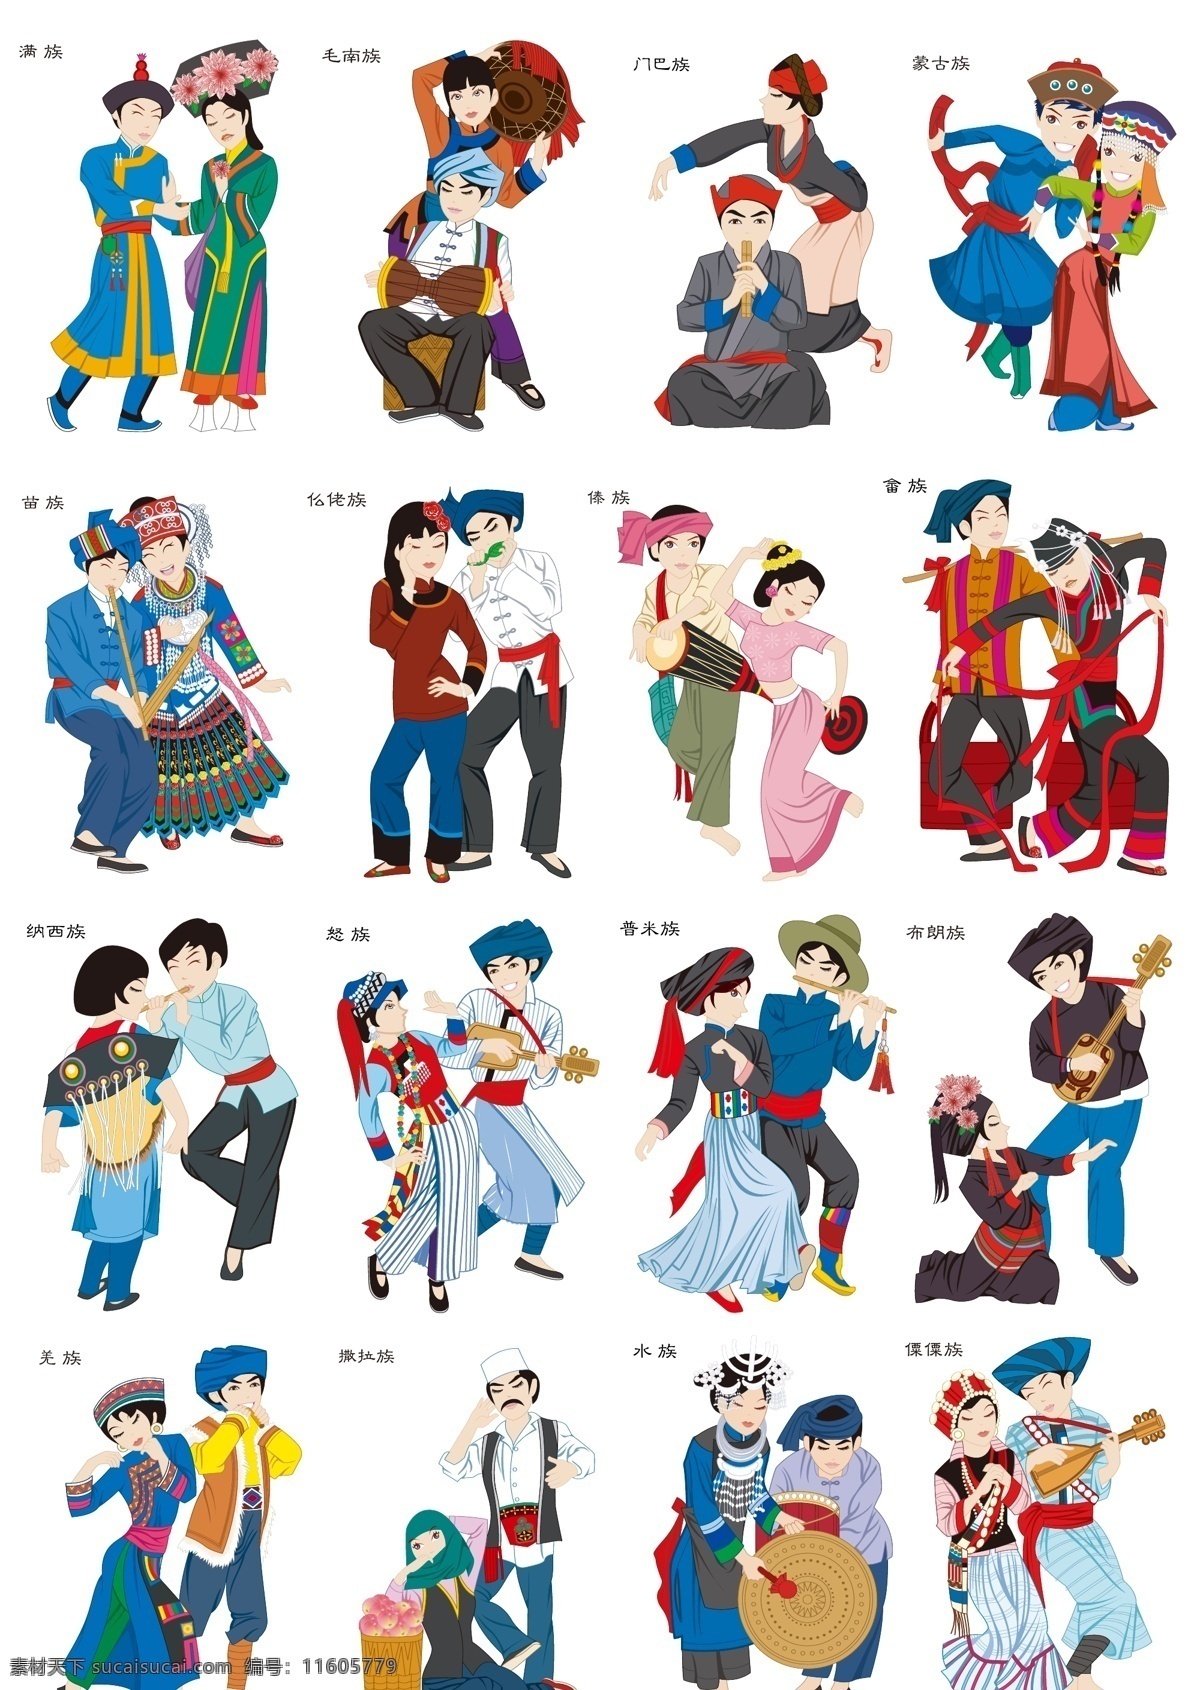 少数民族卡通 少数民族 舞蹈 人物 卡通 服装 中国 地方 活泼 动漫动画 动漫人物